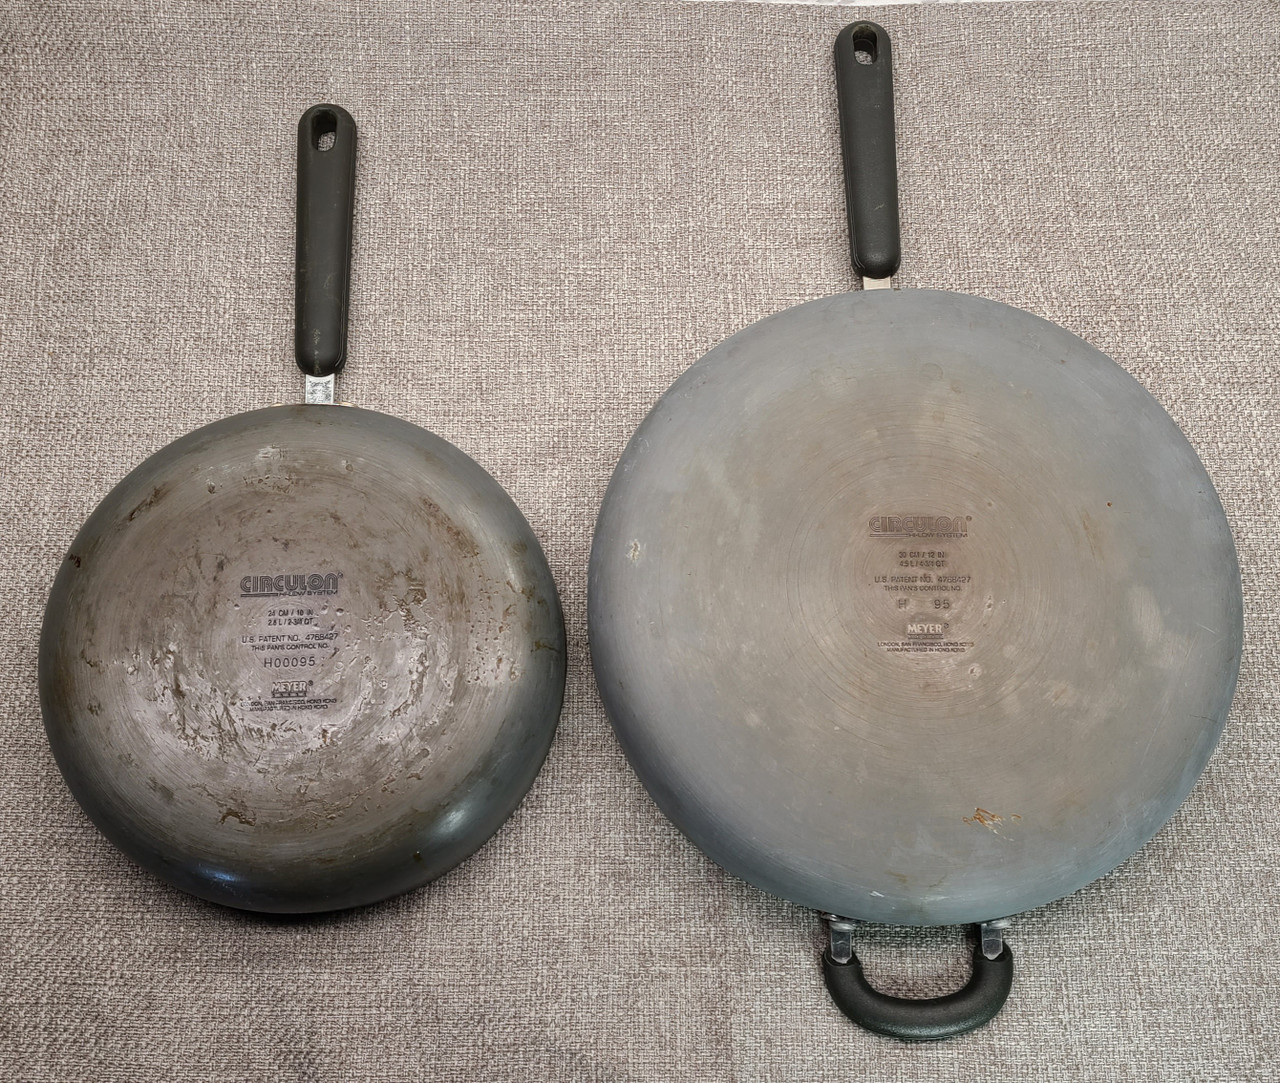 2 Circulon Frying Pans - 10" and 12"